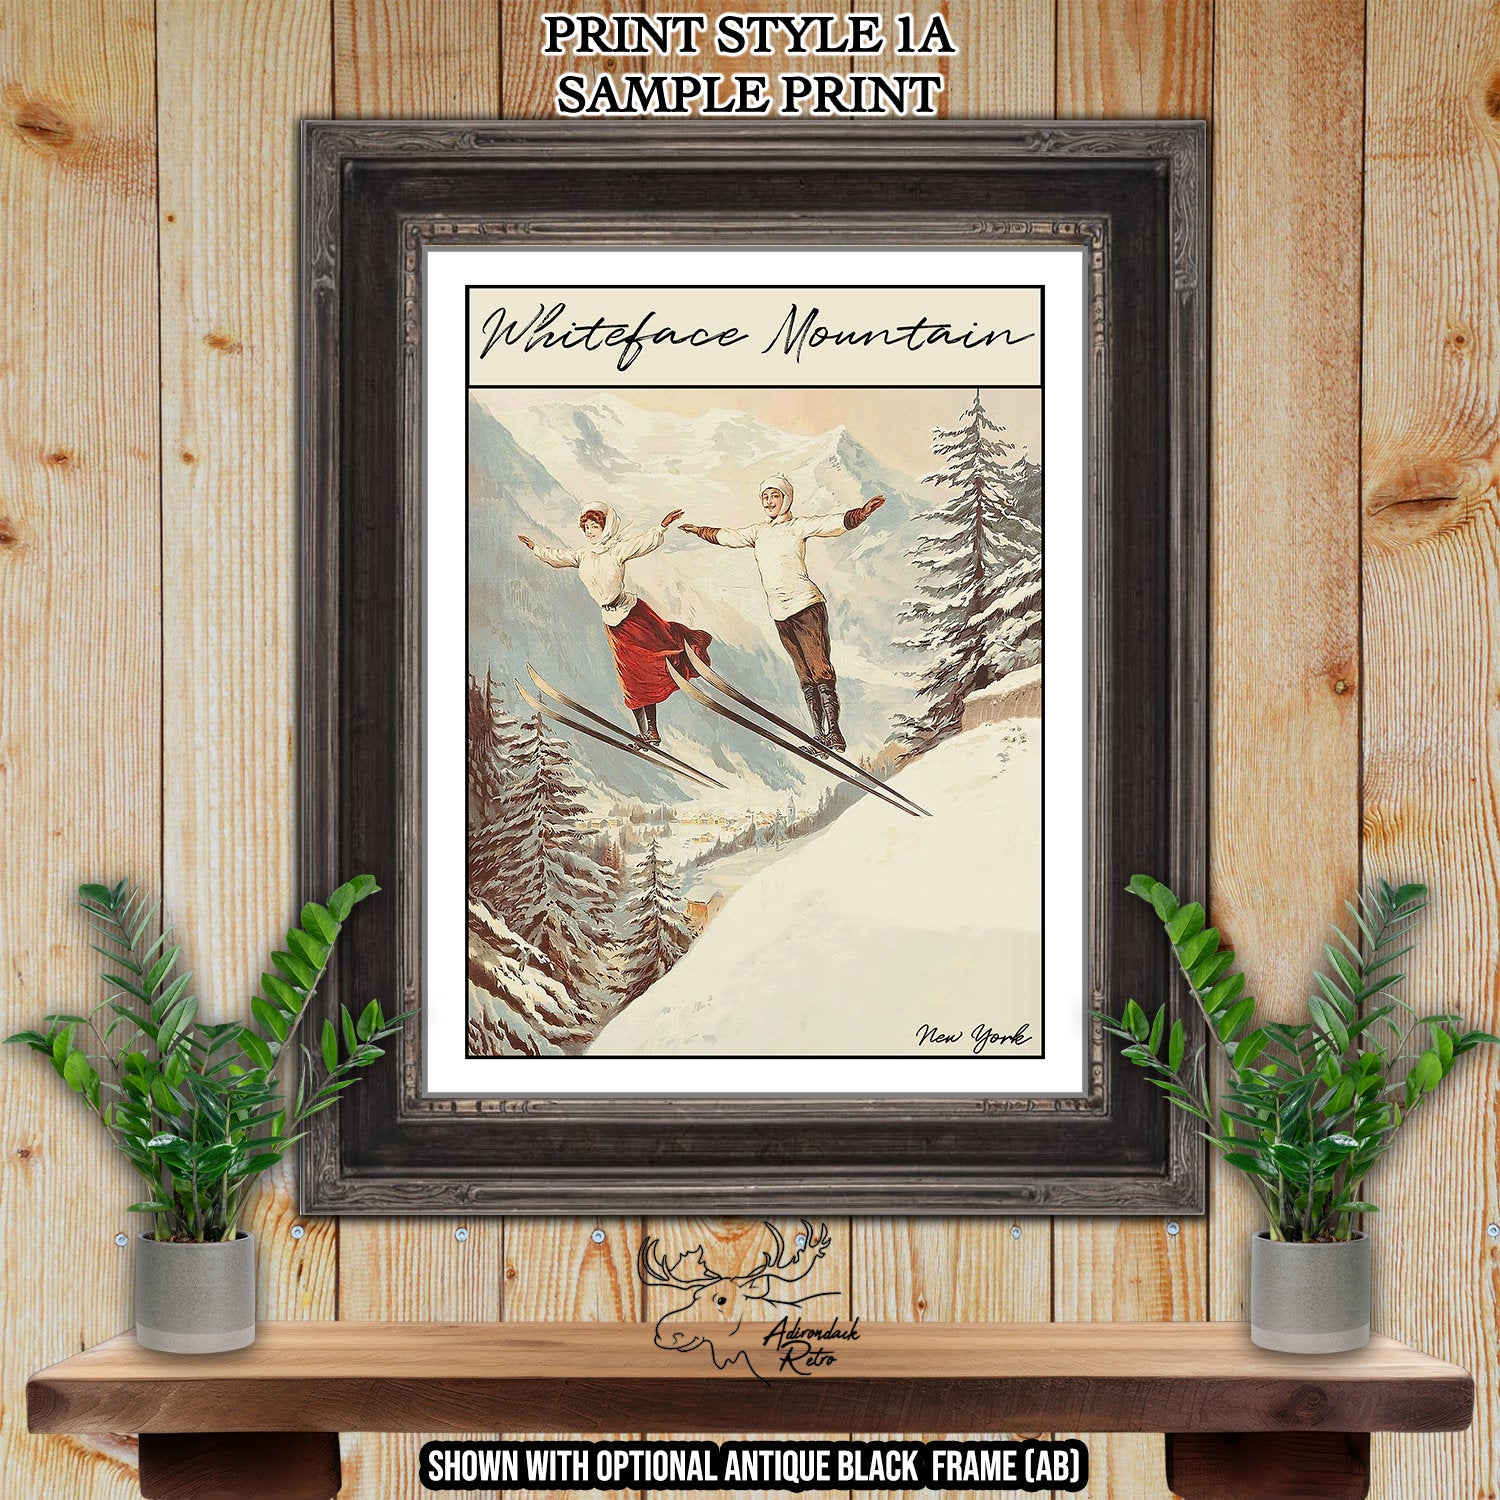 Cannon Mountain New Hampshire Retro Ski Resort Print